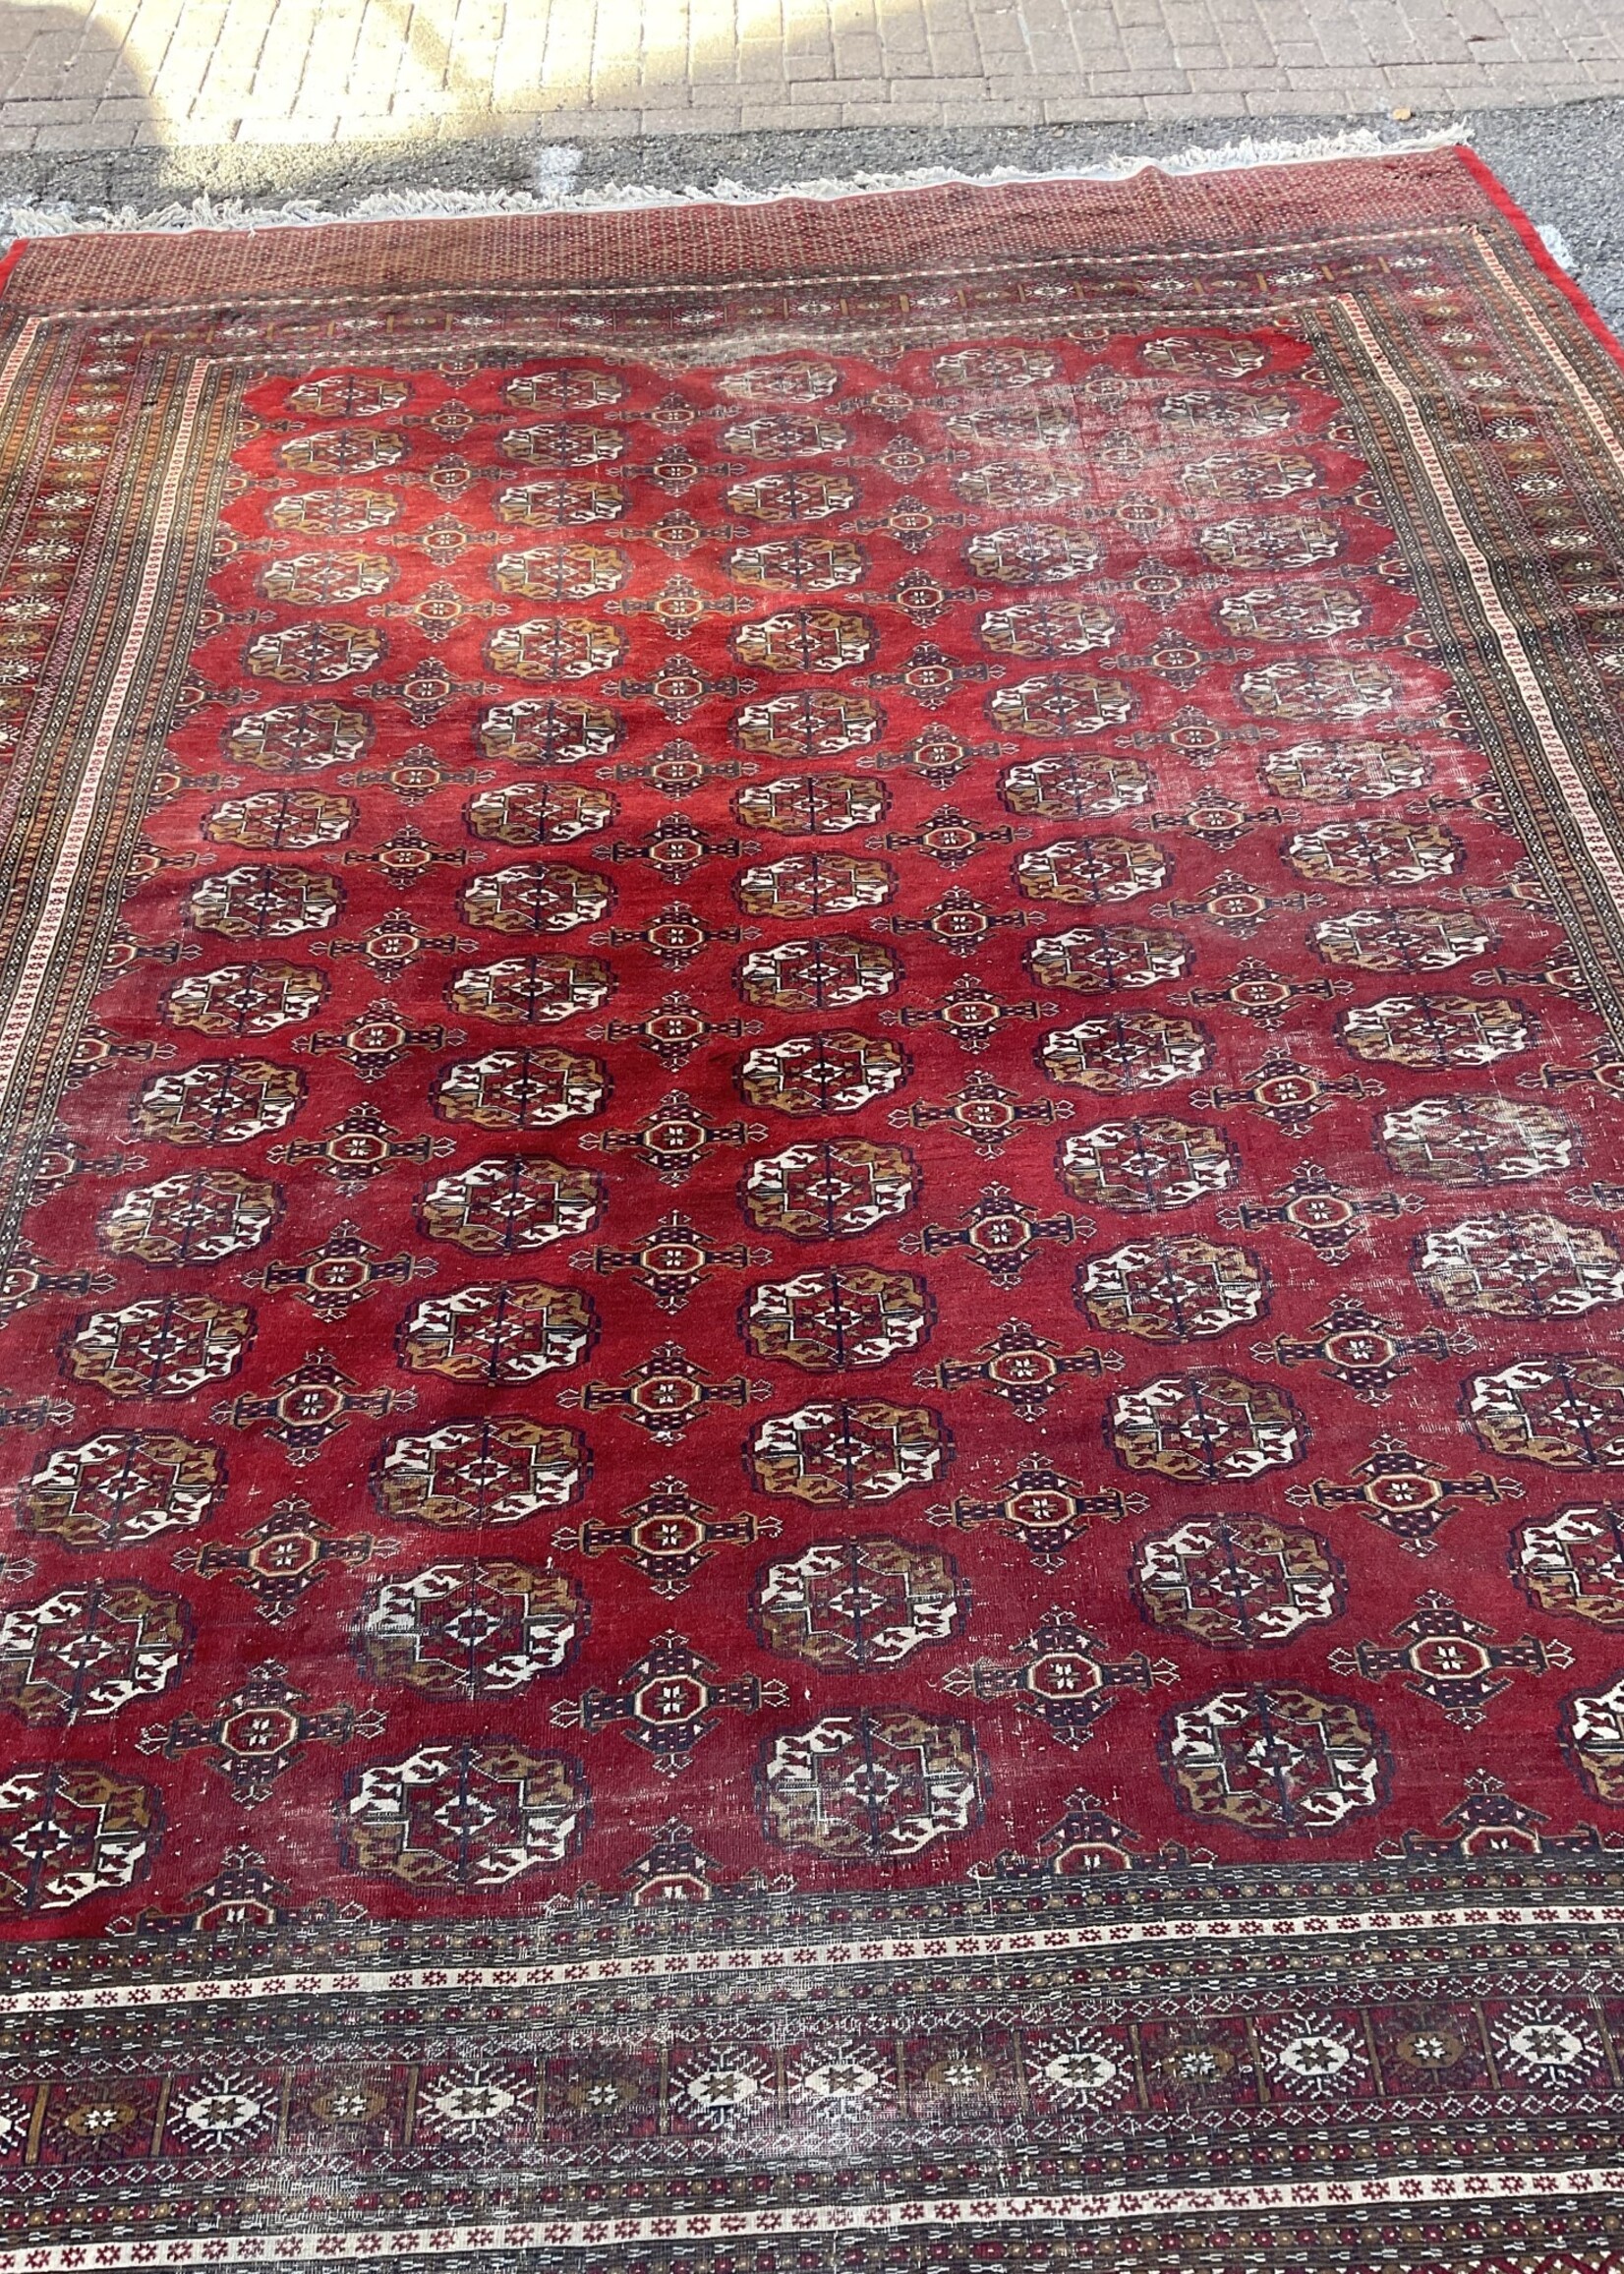 GOODWOOD Bukhara Rug 142 x 108